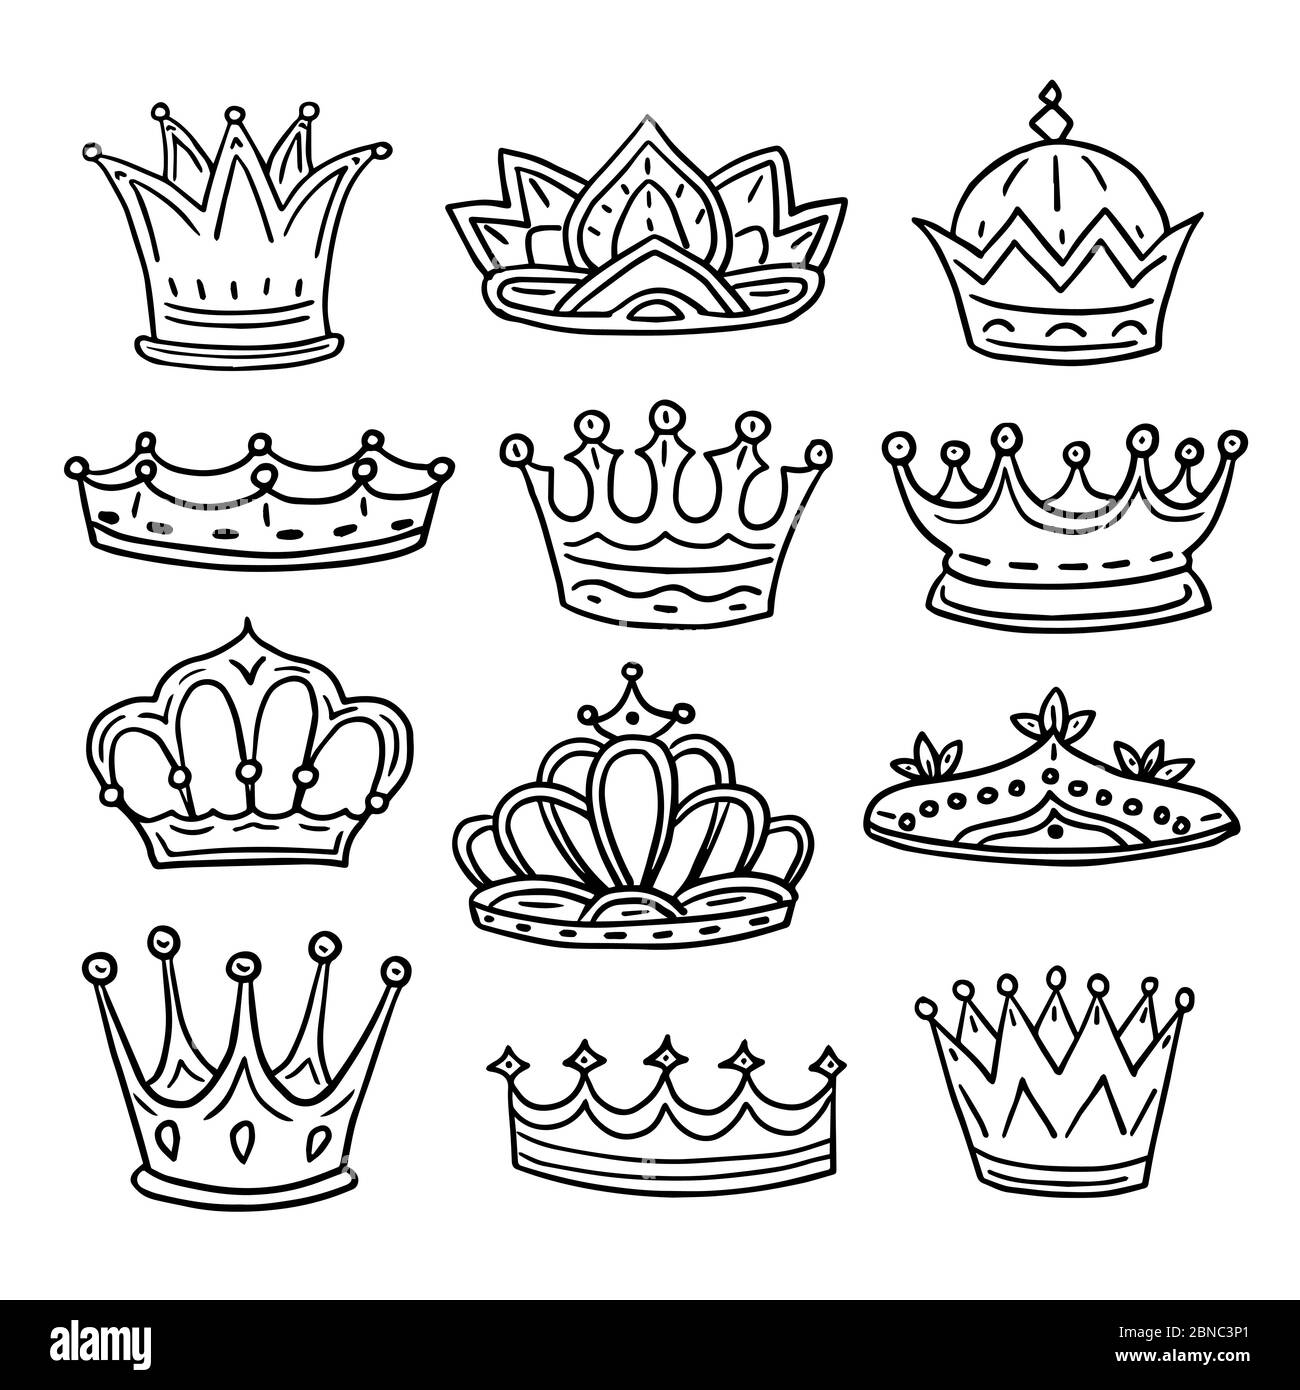 Coronas sacadas a mano. Rey, corona de fideos de la reina y princesa tiara.  Vintage real bosquejo aislado iconos de vectores. Dibujo de la corona para  el rey y la princesa, reina